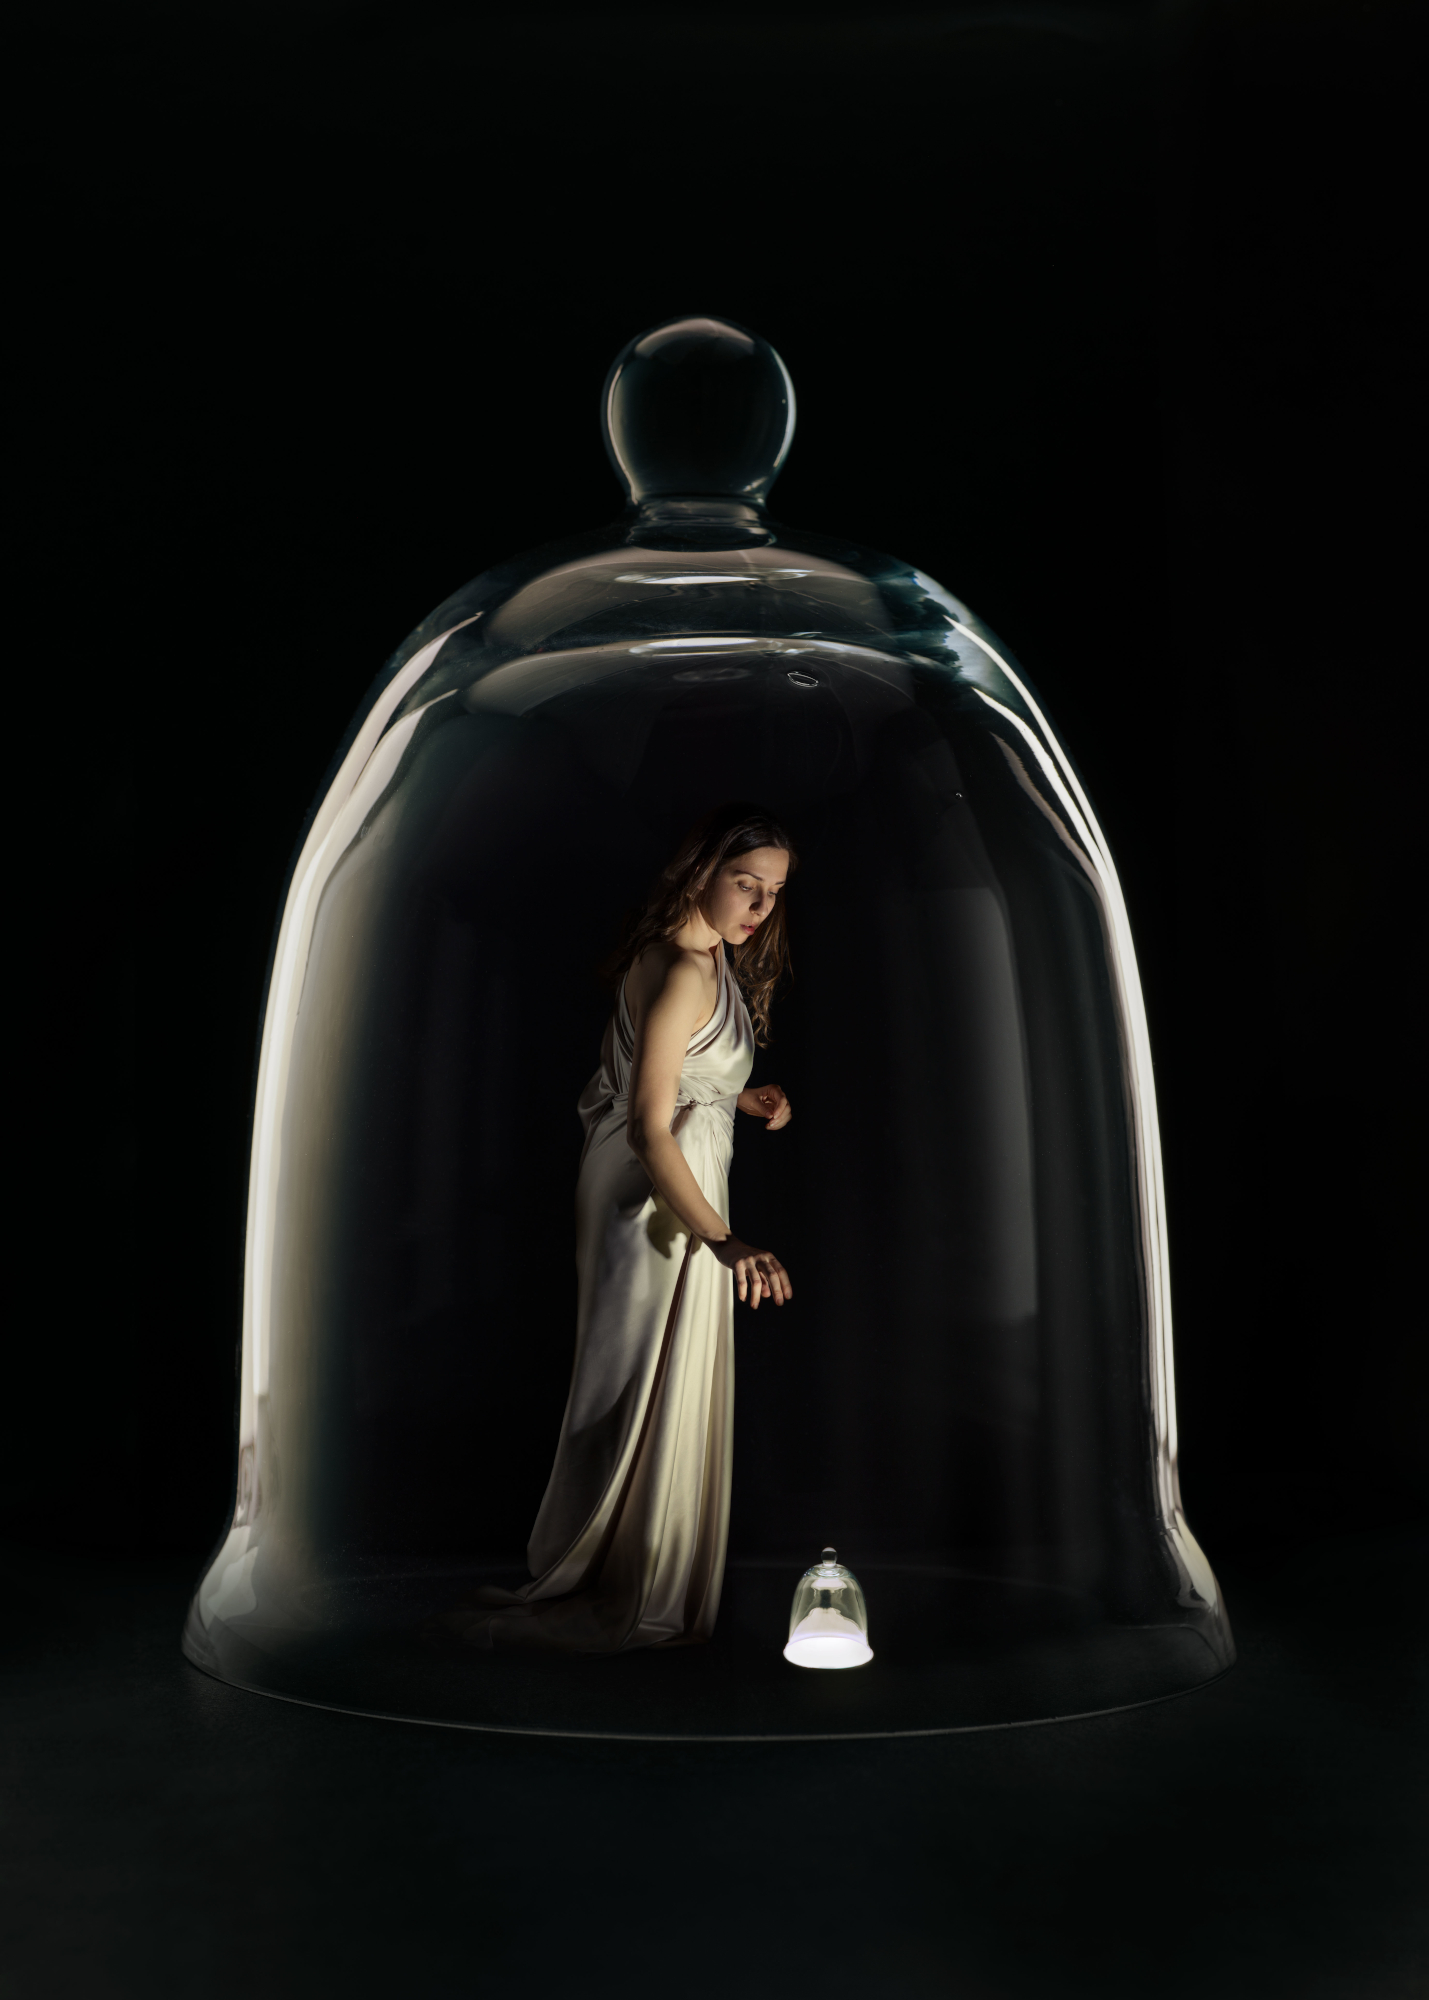 Photo of woman inside bell jar